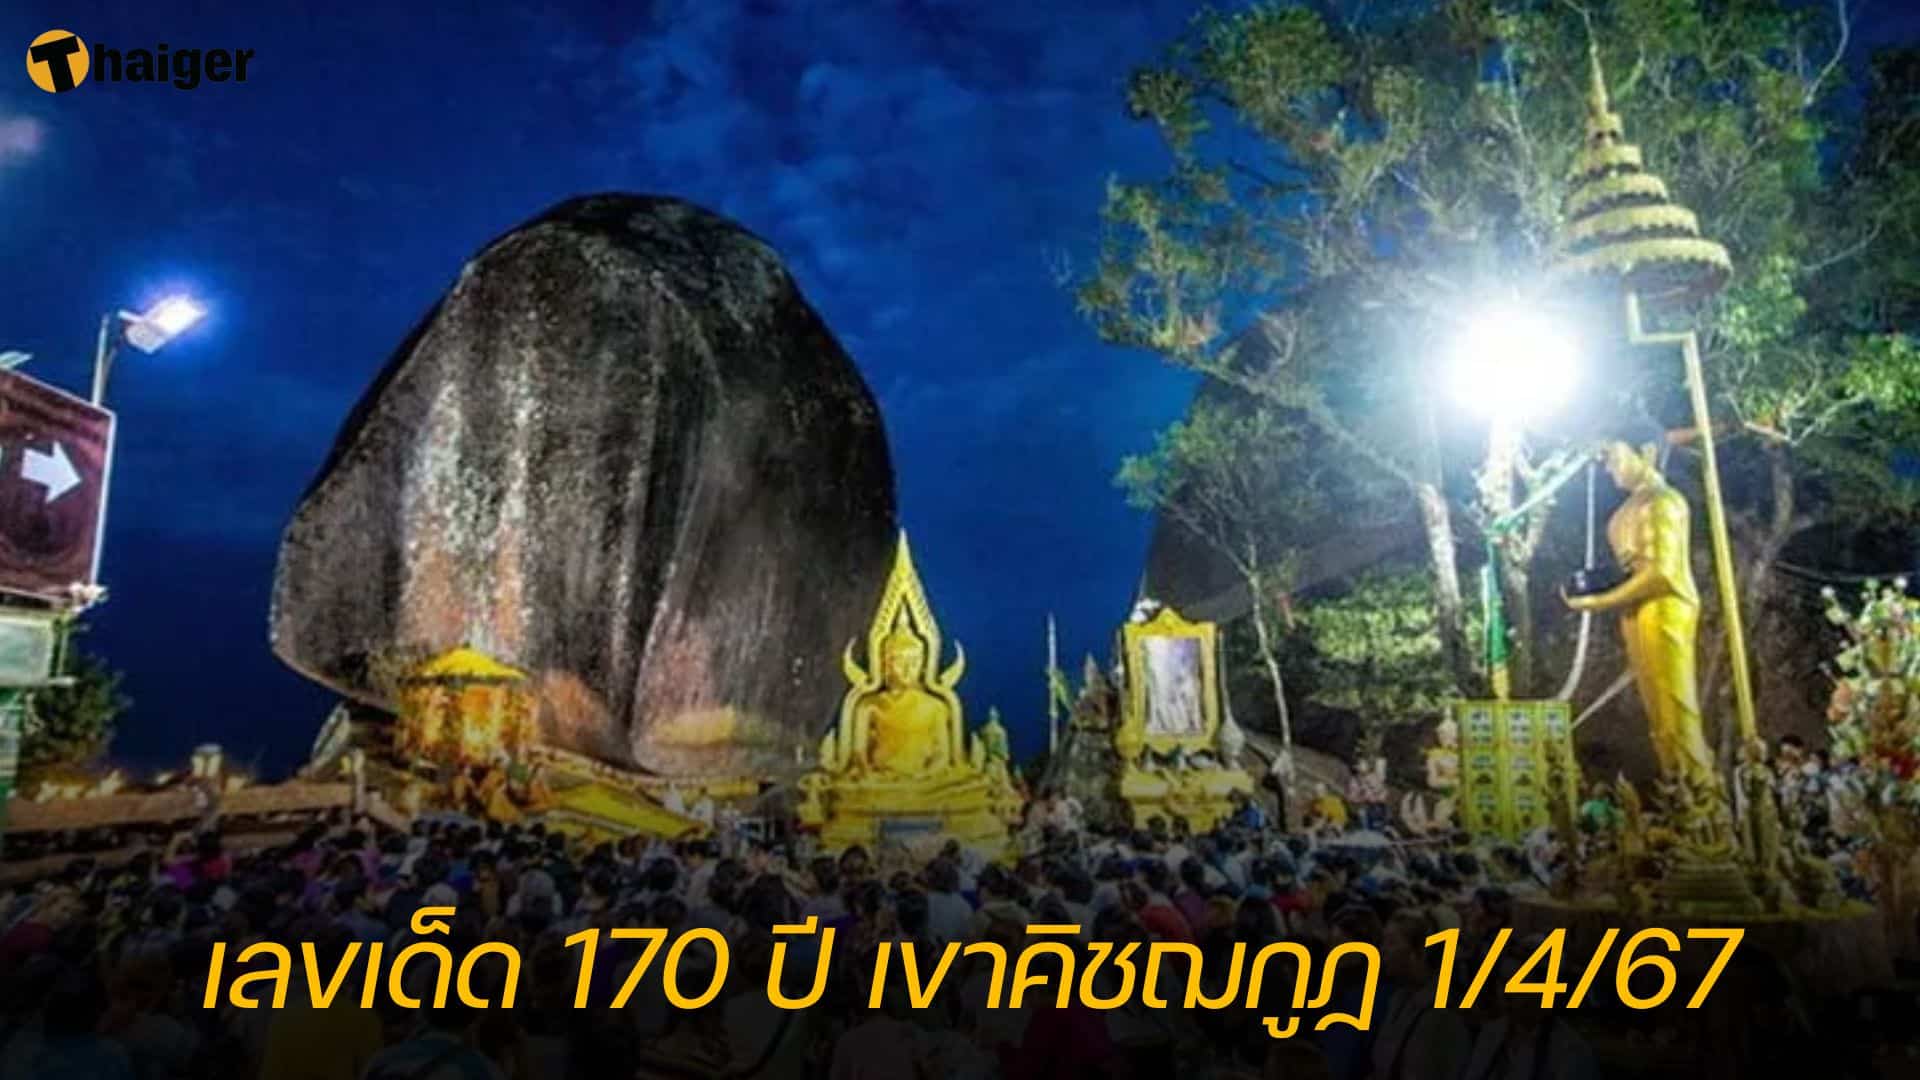 เลขเด็ด 170 ปี เขาคิชฌกูฏ ลุ้นเข้าหวยงวด 1 เม.ย. 67 | Thaiger ข่าวไทย